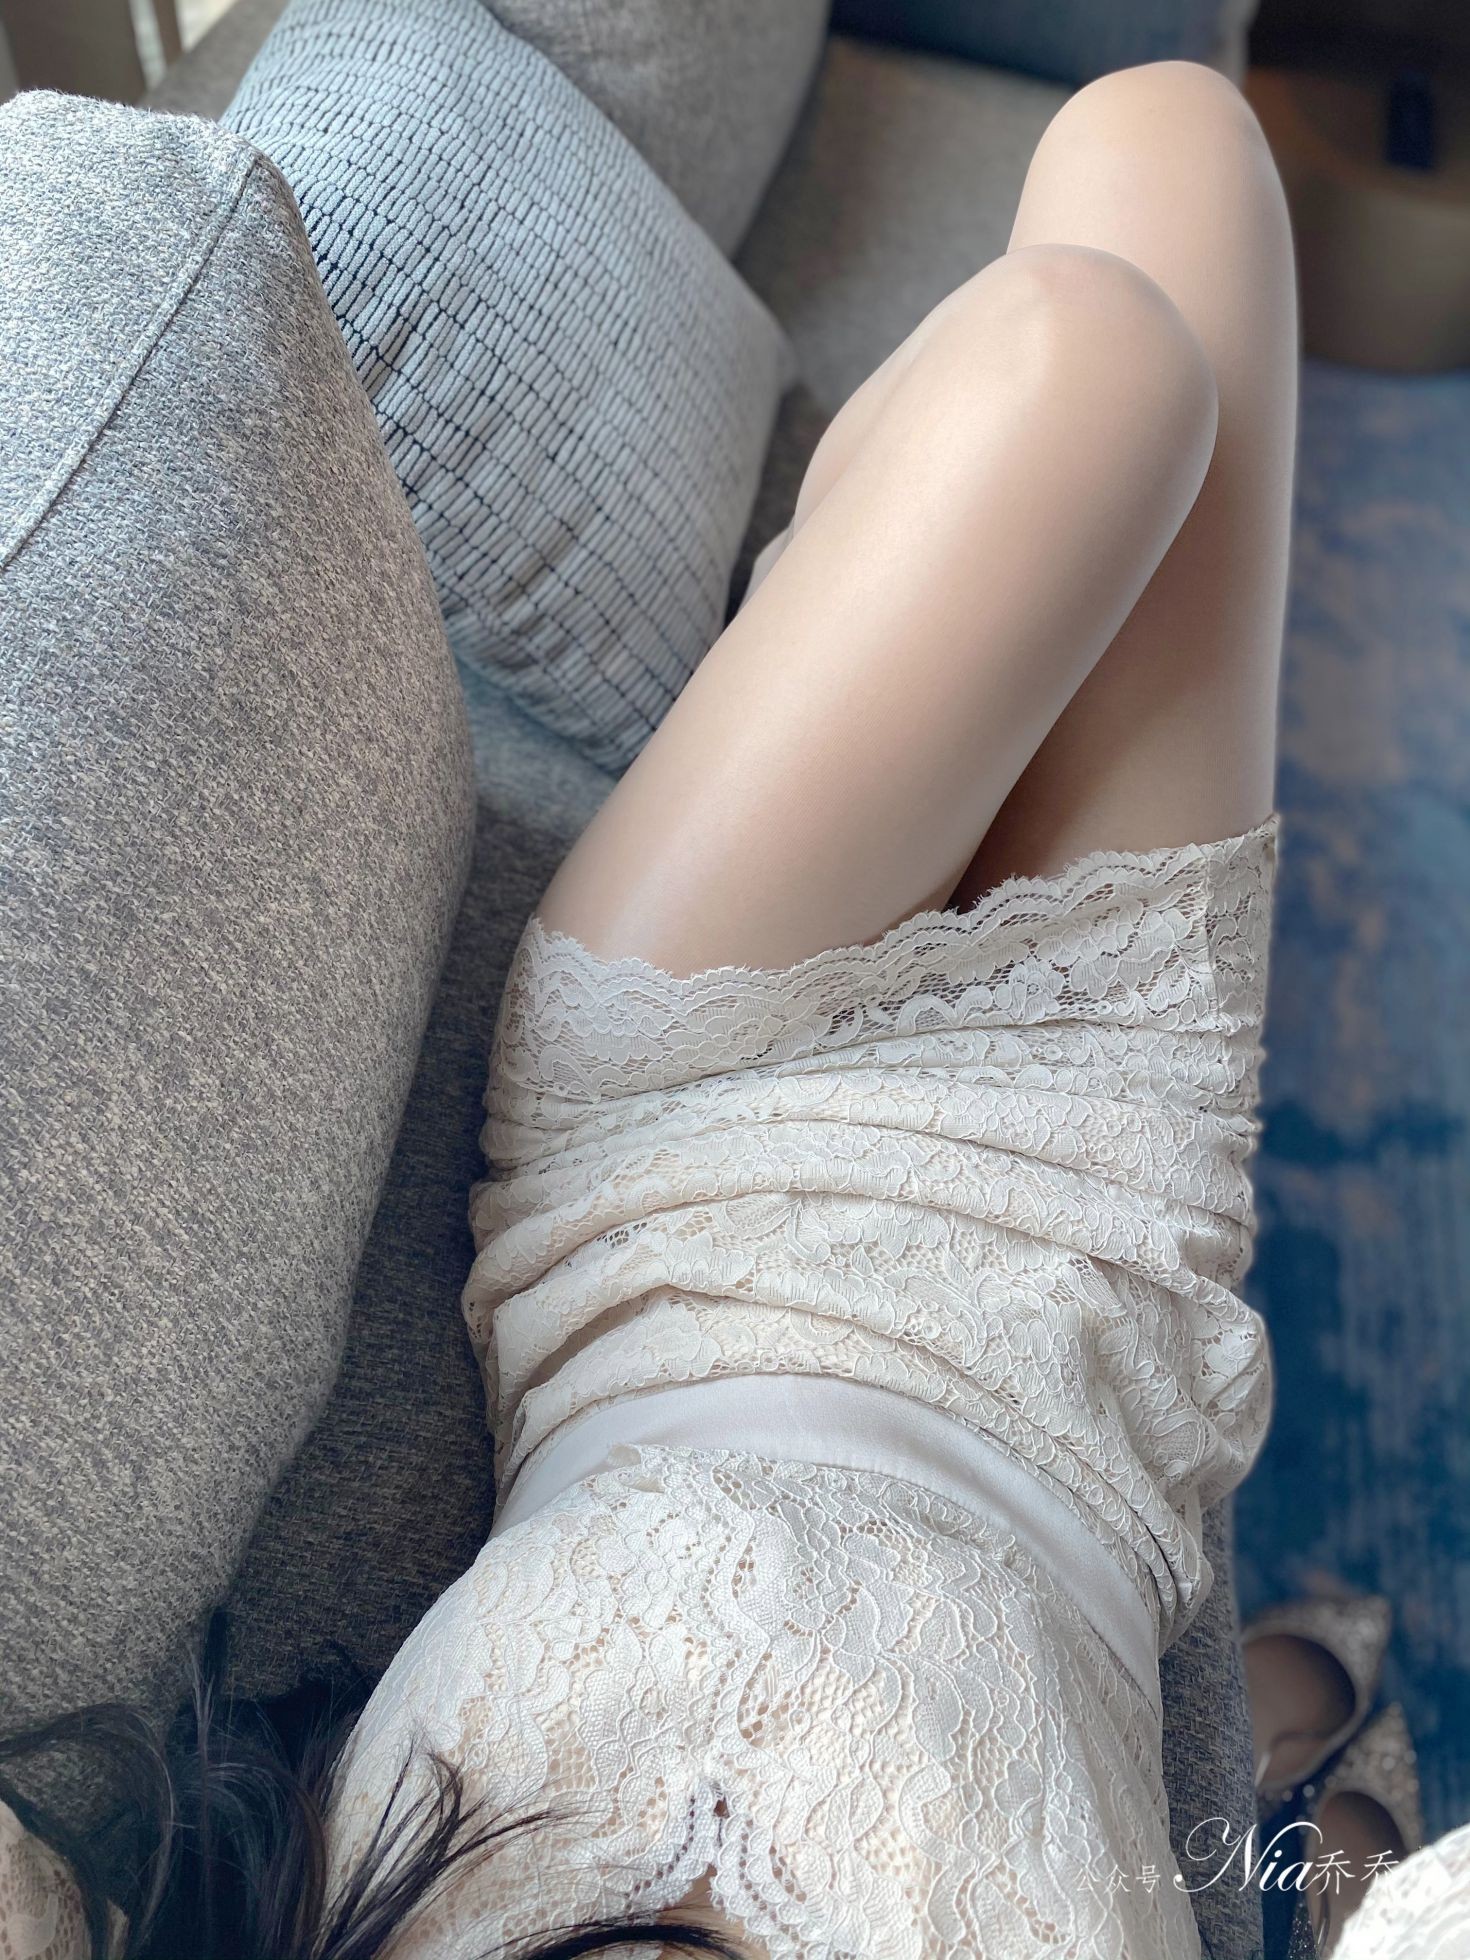 Nia乔乔美女网红性感自拍私摄写真图片家有娇妻蕾丝包臀裙美腿 (46)